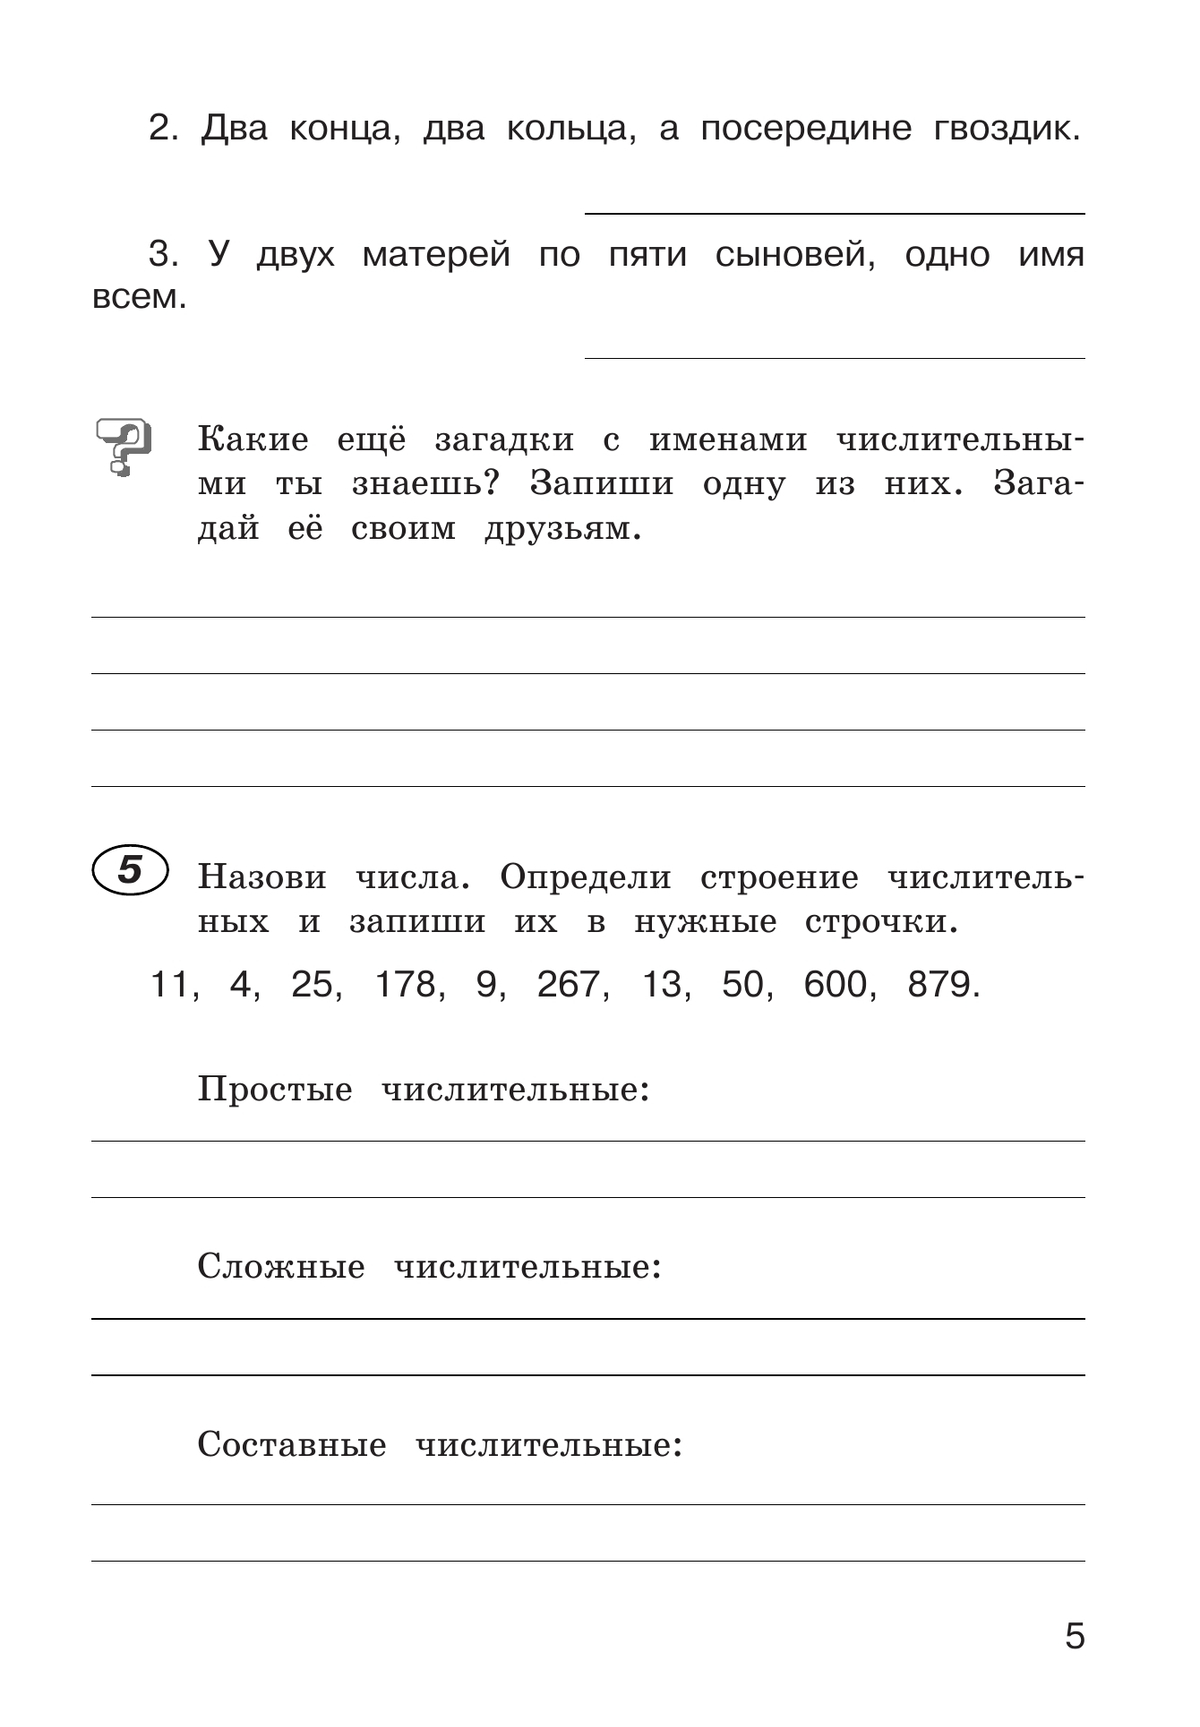 Рабочая тетрадь по русскому языку. 4 класс. В 2 частях. Часть 2 5